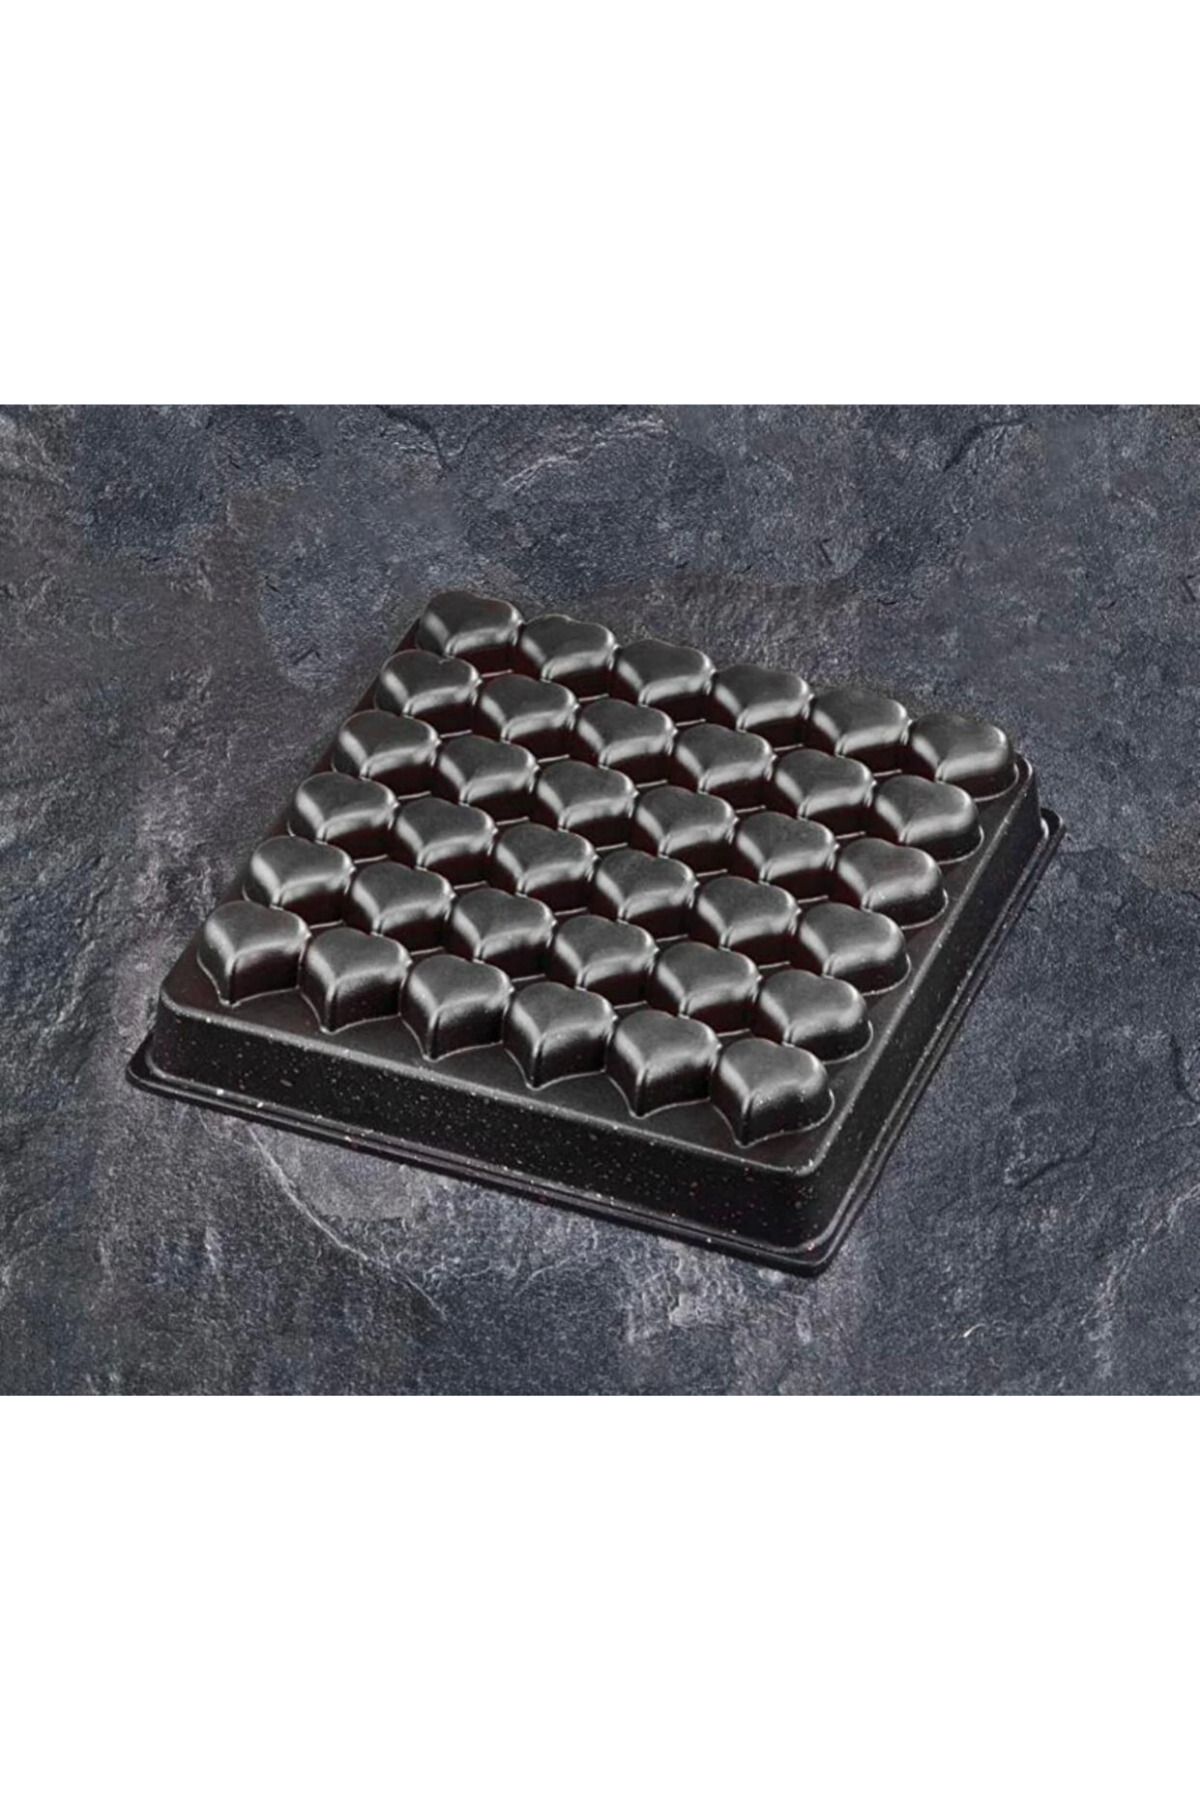 adarya Döküm Granit Kalpli Kek Kalıbı 36 Lı - Kalpli Brownie Kalıbı - Mini Muffin Kalıbı - Atom Kek Kalıbı